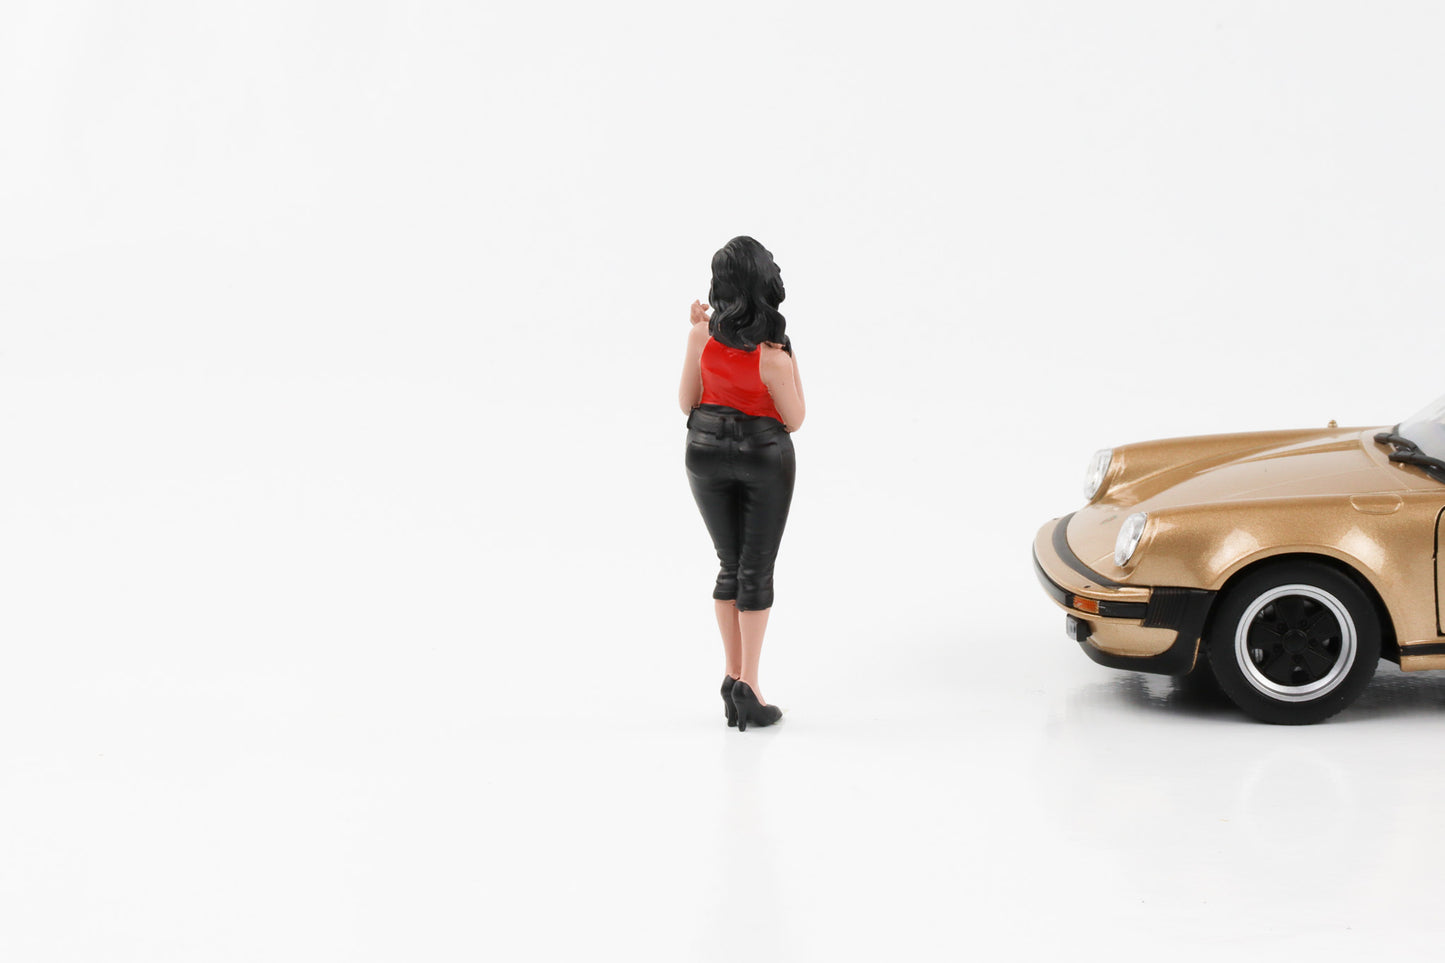 1:24 Figure Pin-up Girls Donna Ragazza Figure Selezione Diorama americano